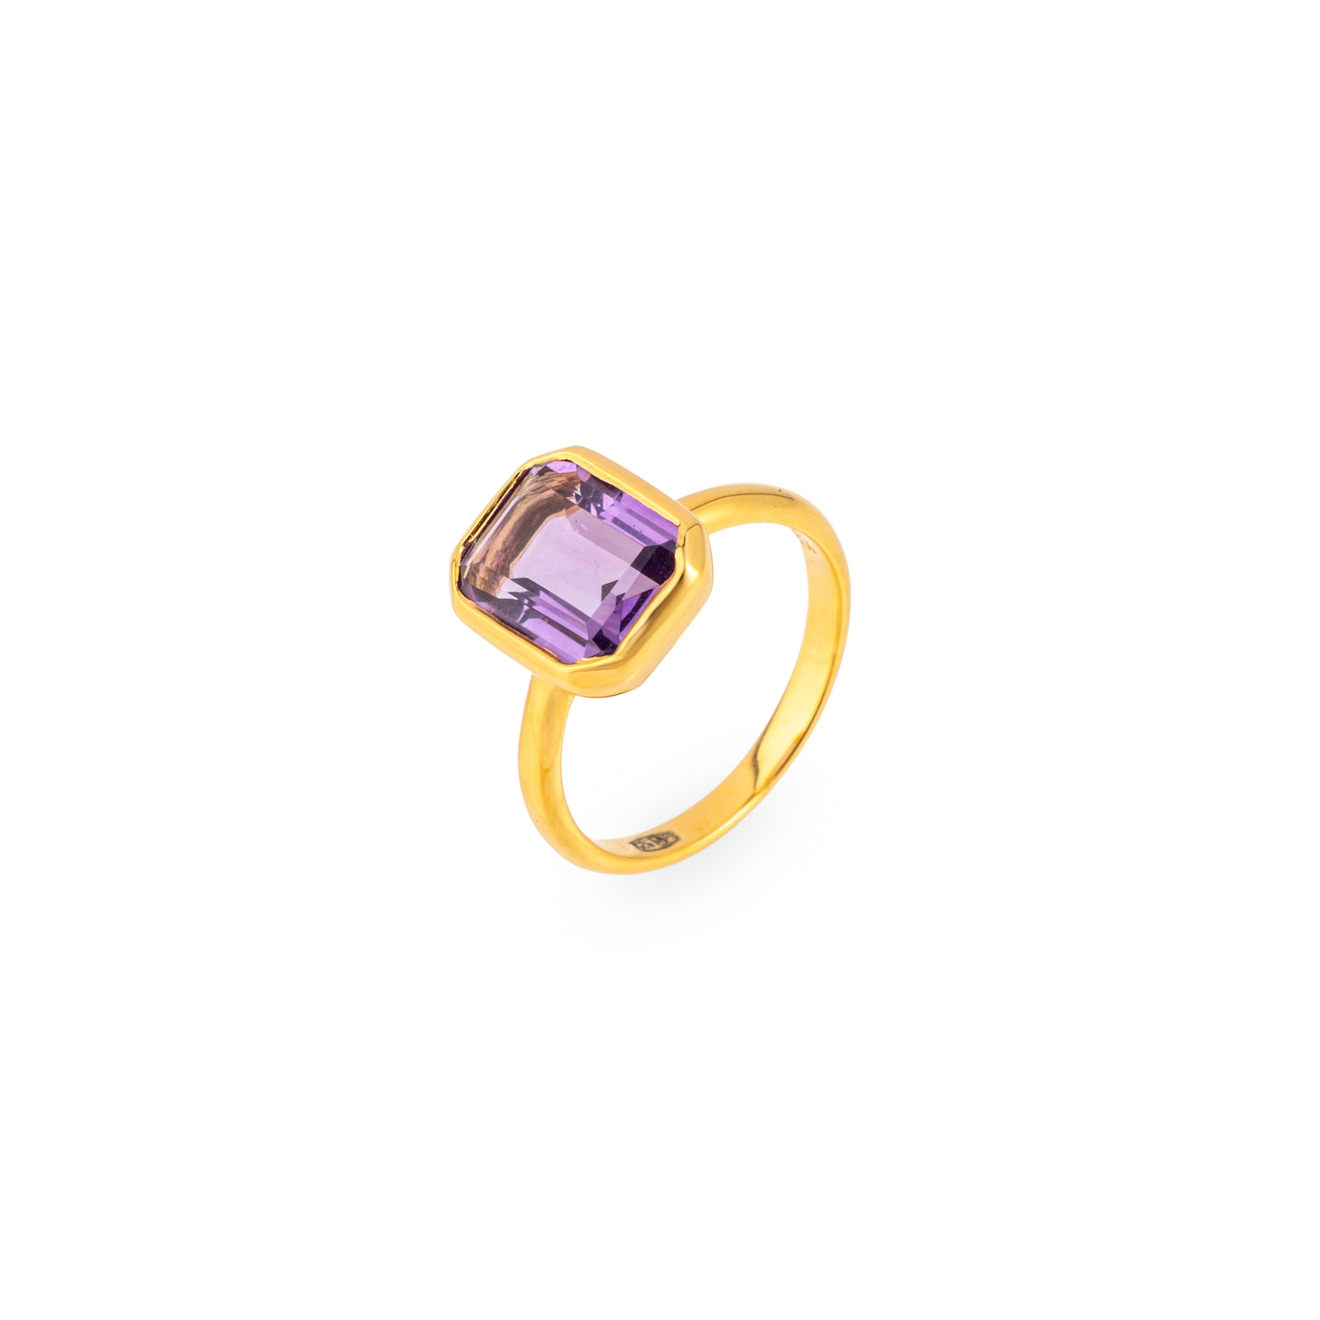 Wisteria Gems Позолоченное кольцо с большим прямоугольным аметистом позолоченное кольцо с аметистом